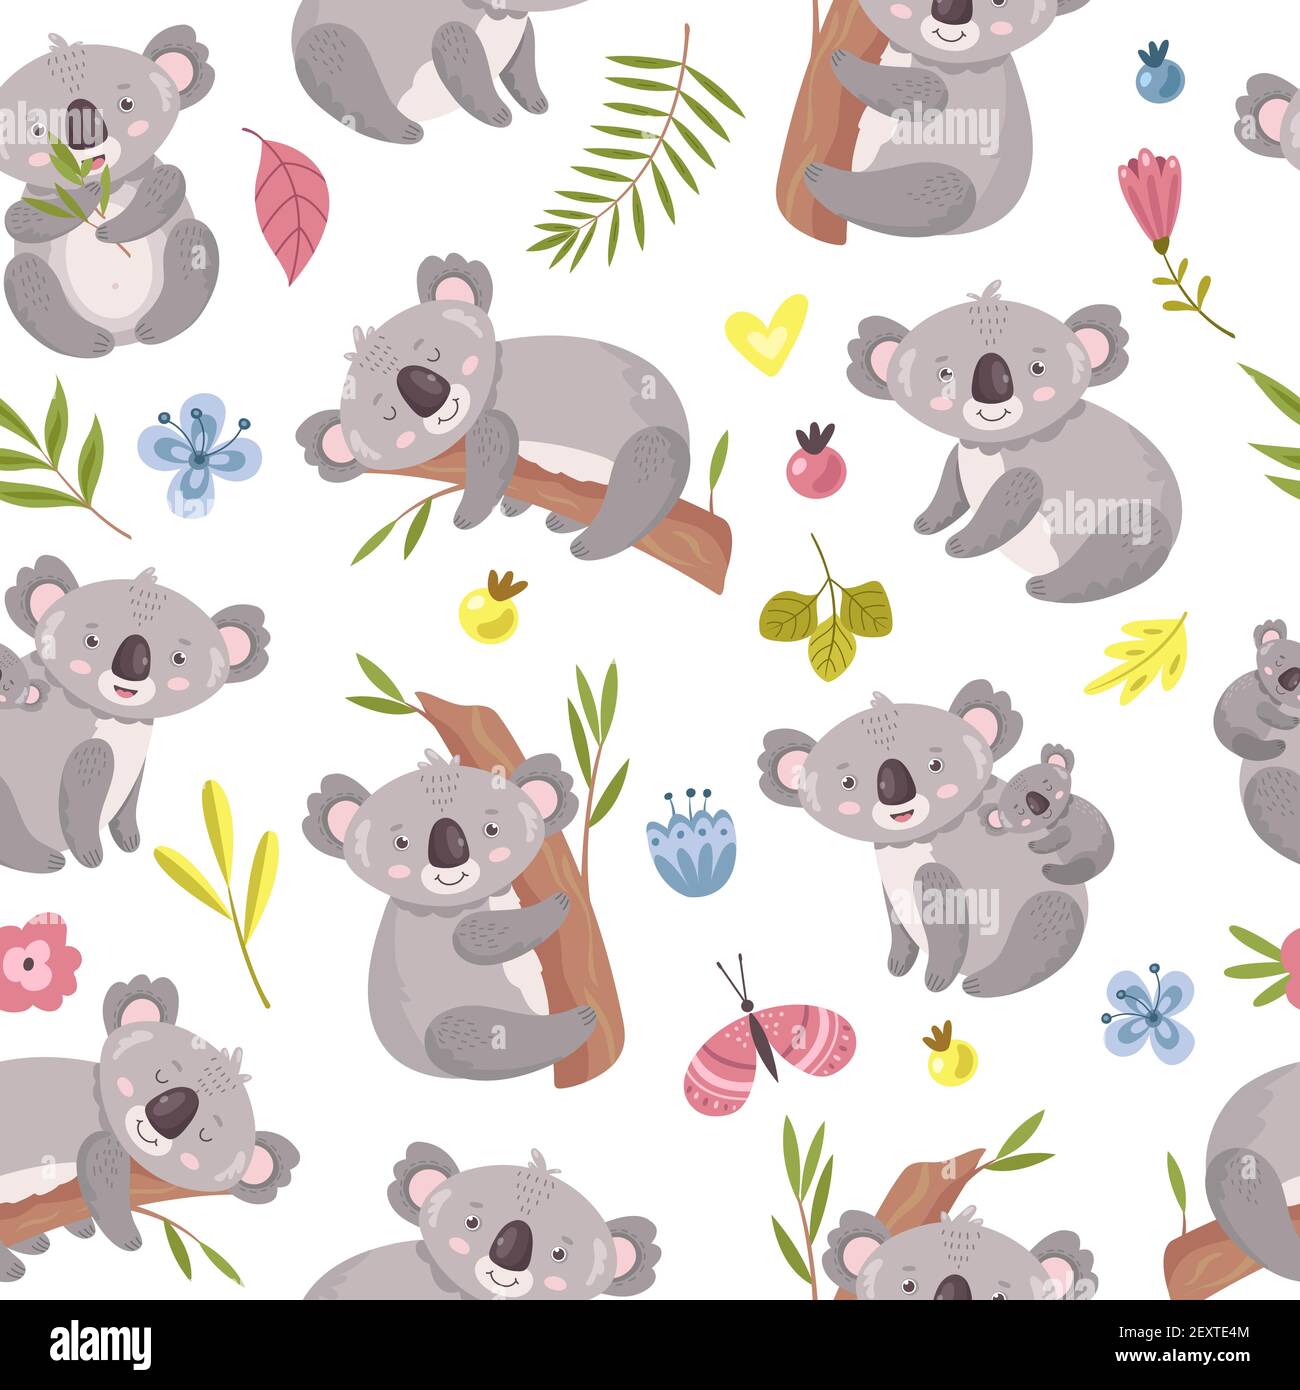 Modello senza giunture Koala. Cartoon carino orso australiano texture. Animali di foresta con alberi di eucalipto e foglie. Vettore capretto zoo sfondo australiano koala, simpatico animale arrampicata illustrazione Illustrazione Vettoriale